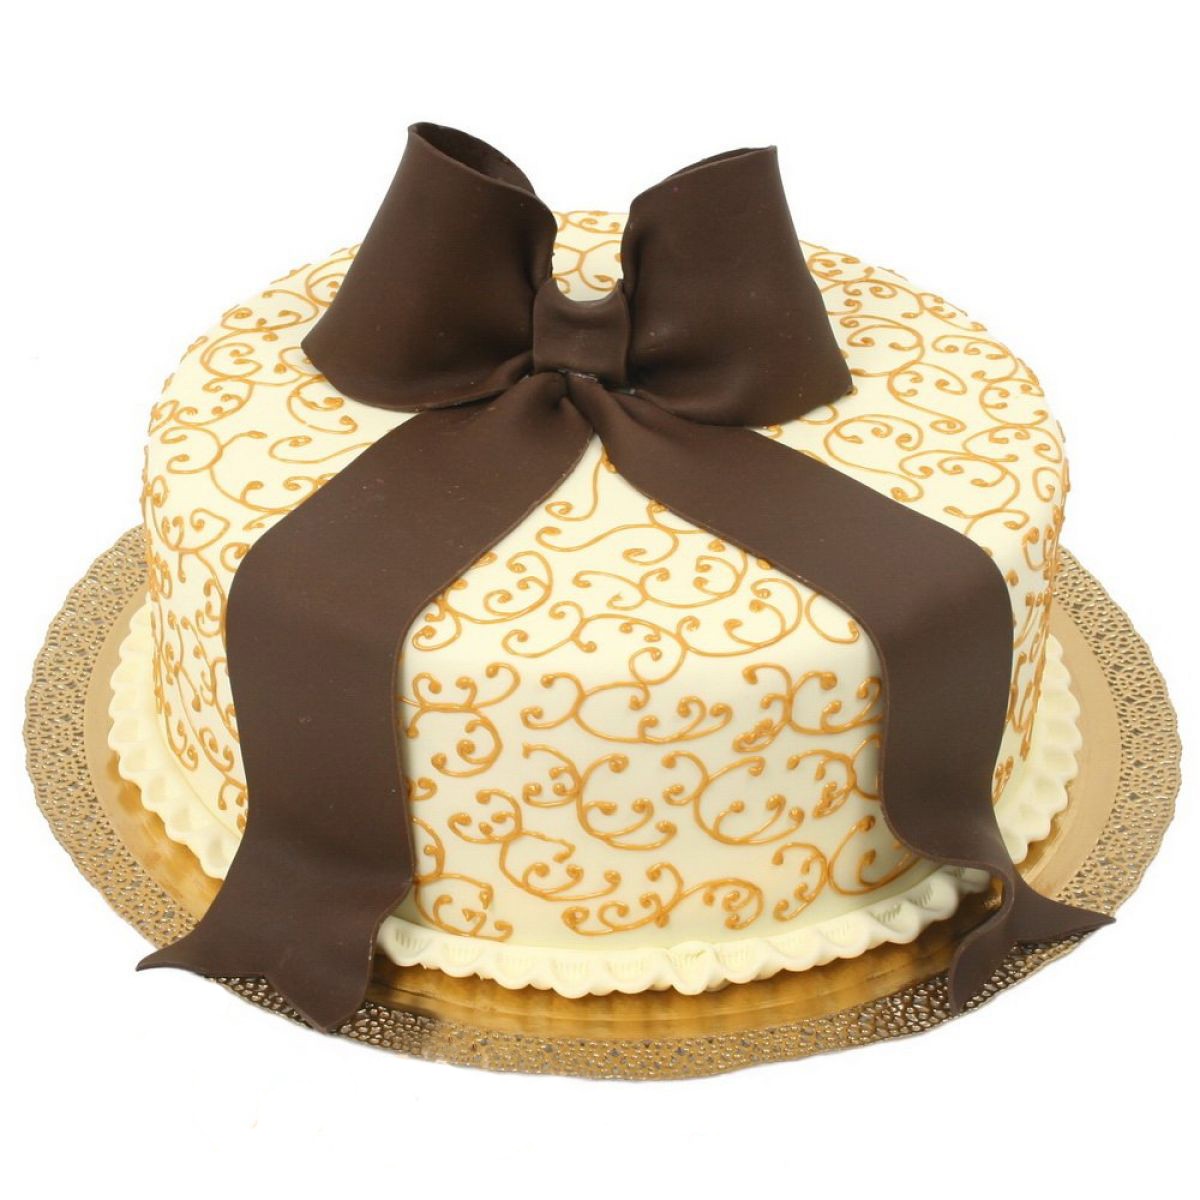 Банты торты баловать красивее поставьте. Торт с бантом. Тортик с бантиком. Торт с шоколадным бантом. Бпнто торт.